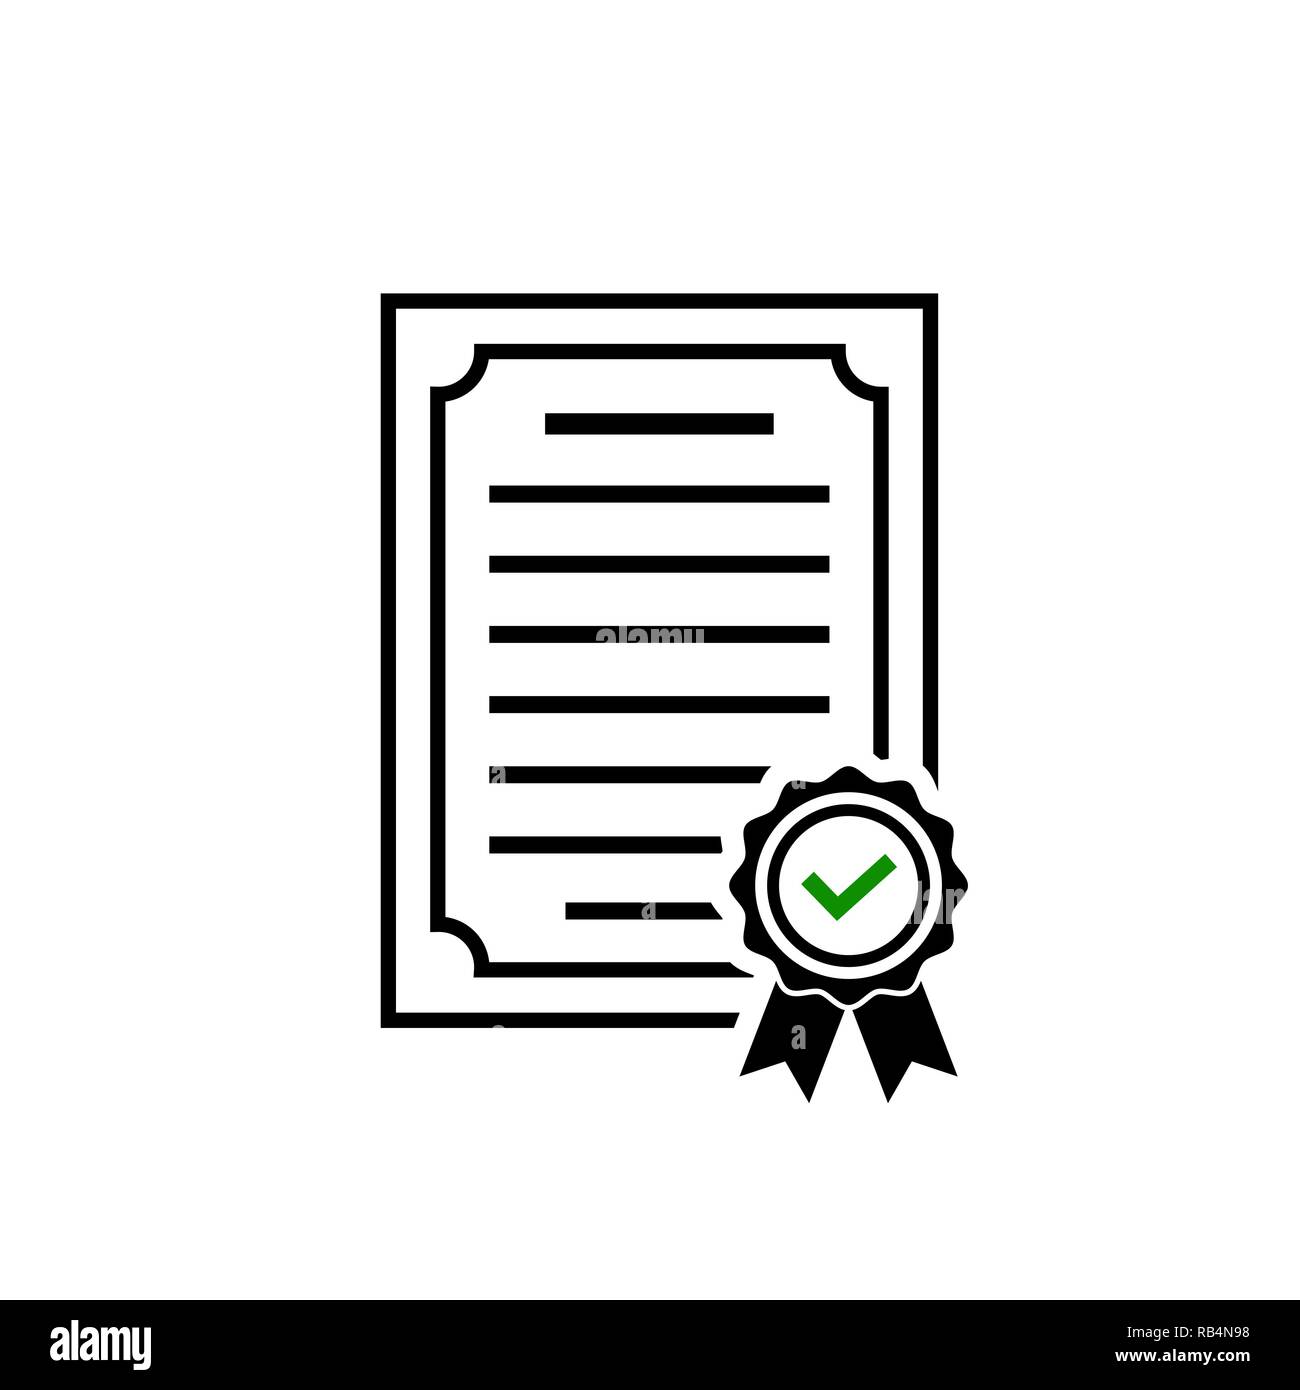 Icona del certificato rosetta, simbolo e segno di spunta verde Illustrazione Vettoriale